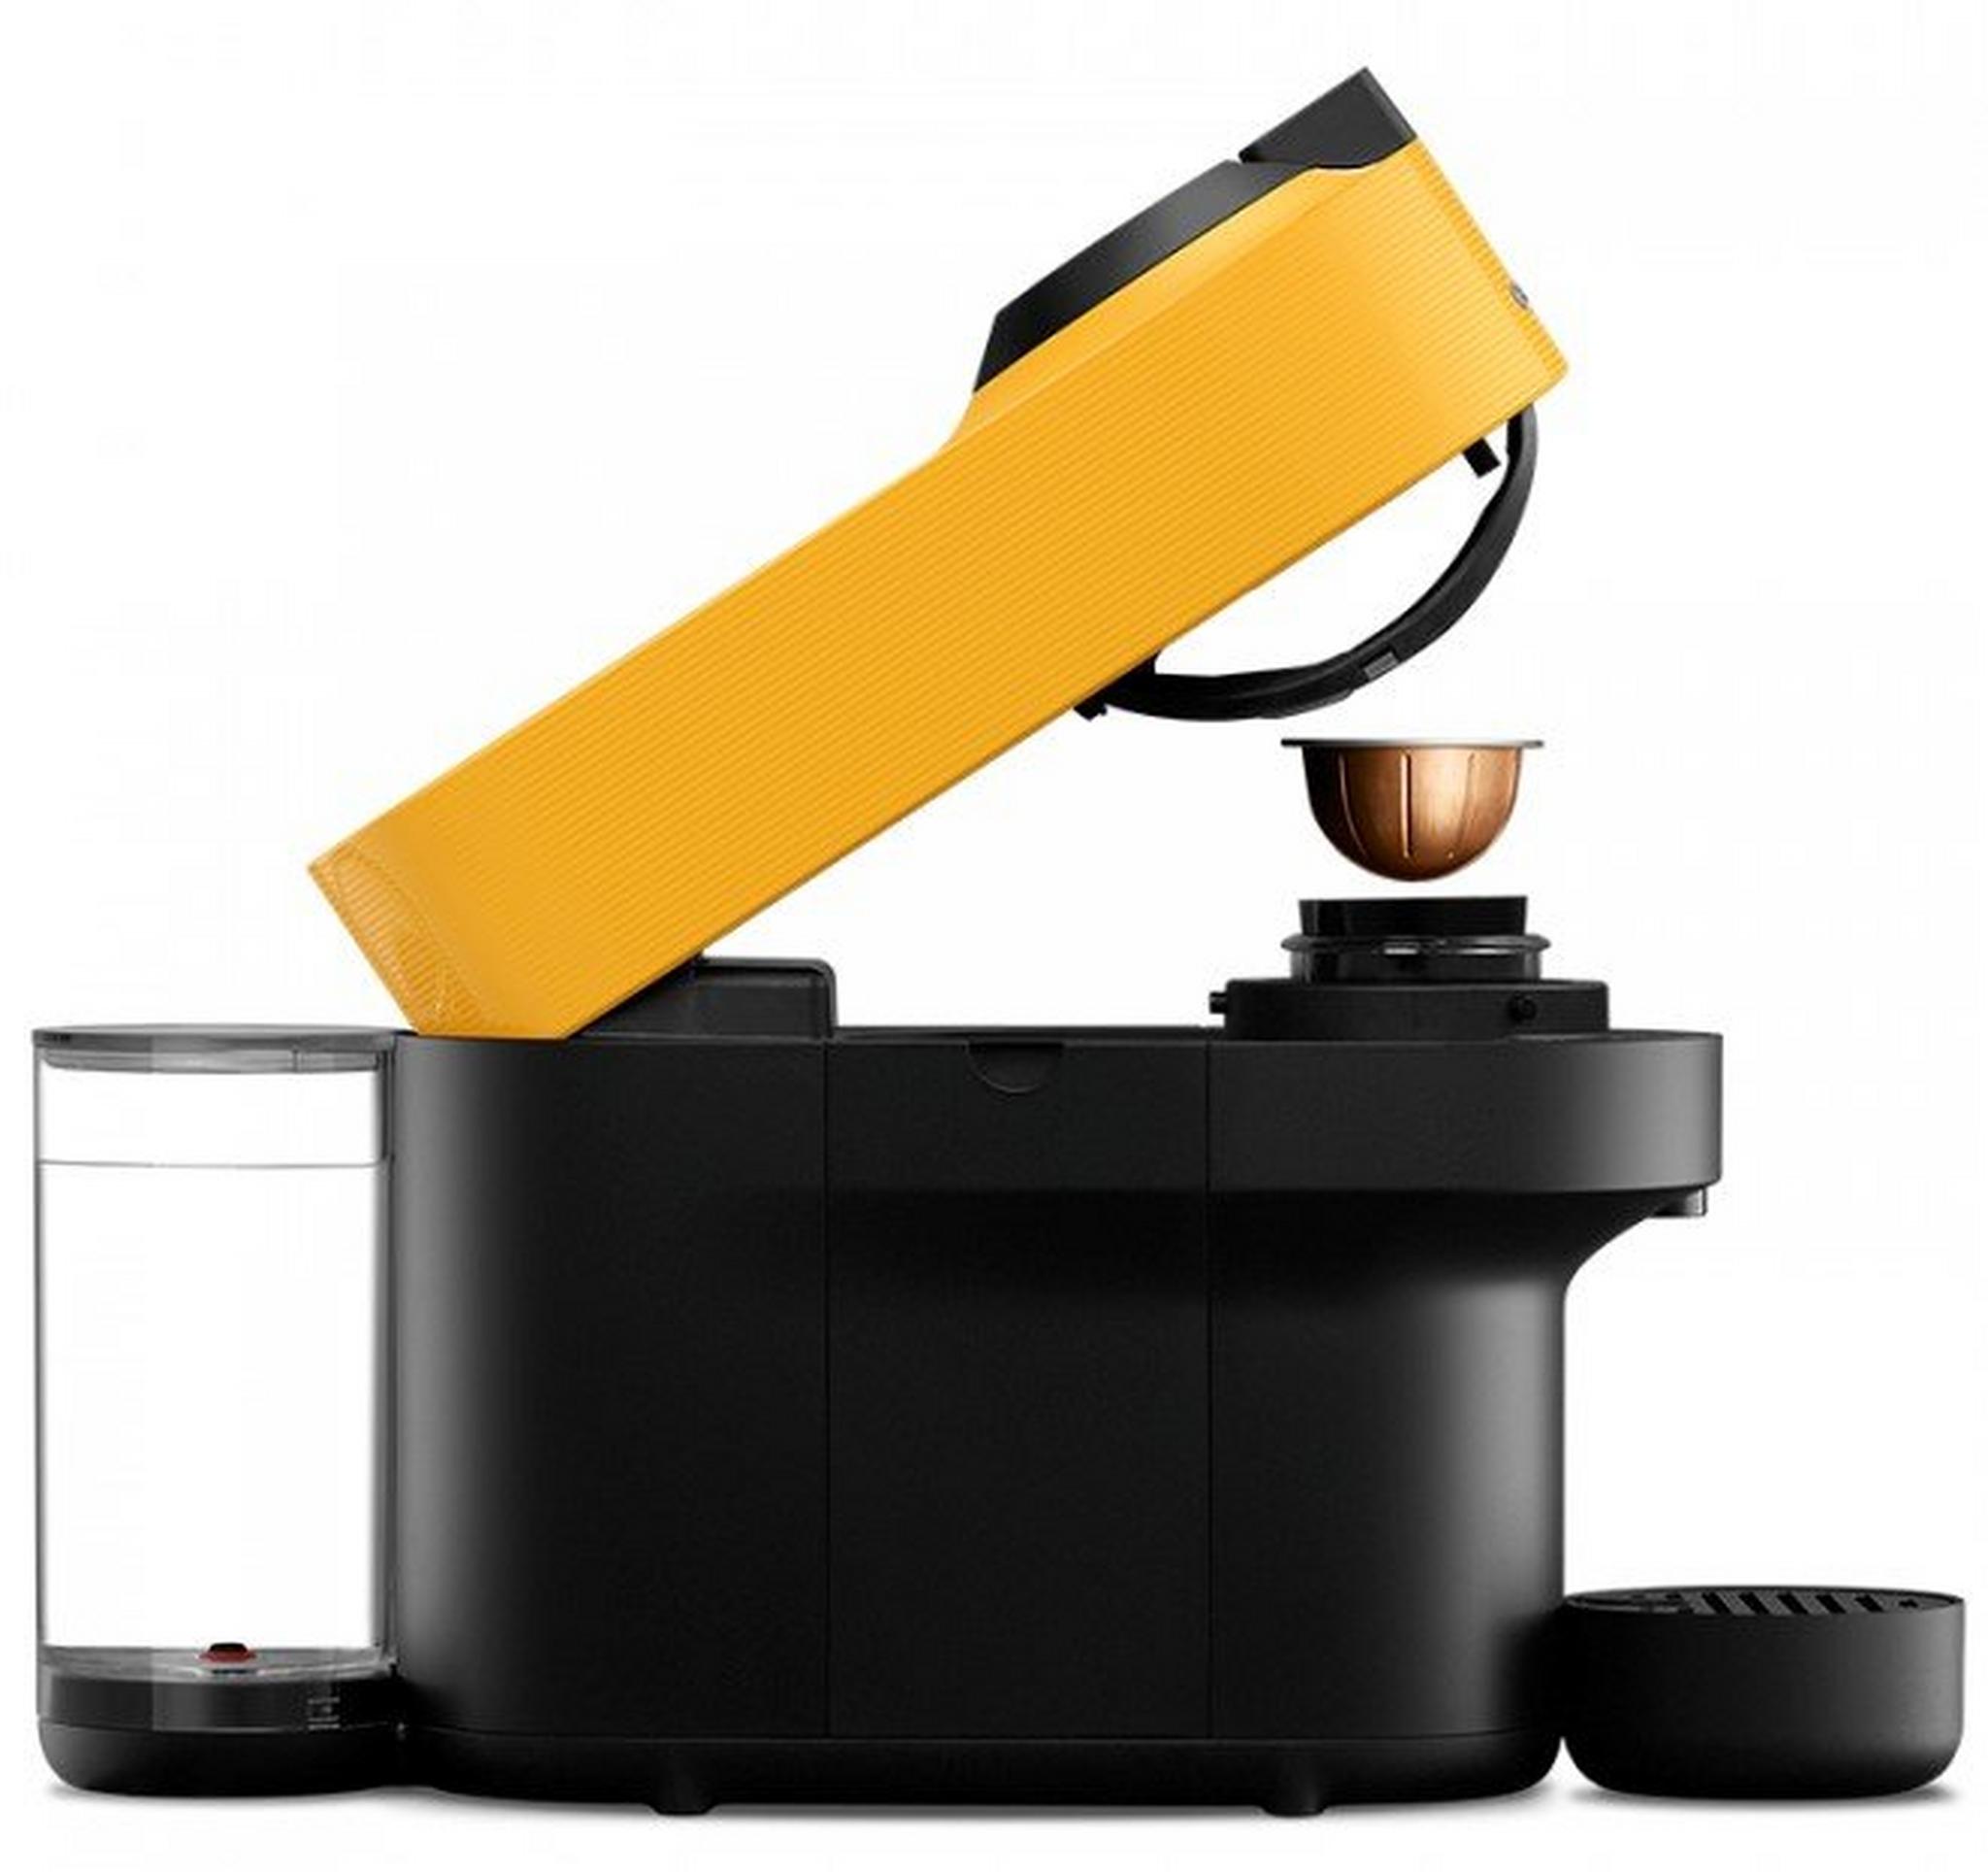 ماكينة تحضير القهوة فيرتو بوب من نسبريسو، قدرة 220 واط، سعة 0.6 لتر، GDV2-GB-YE-NE – أصفر مانجو